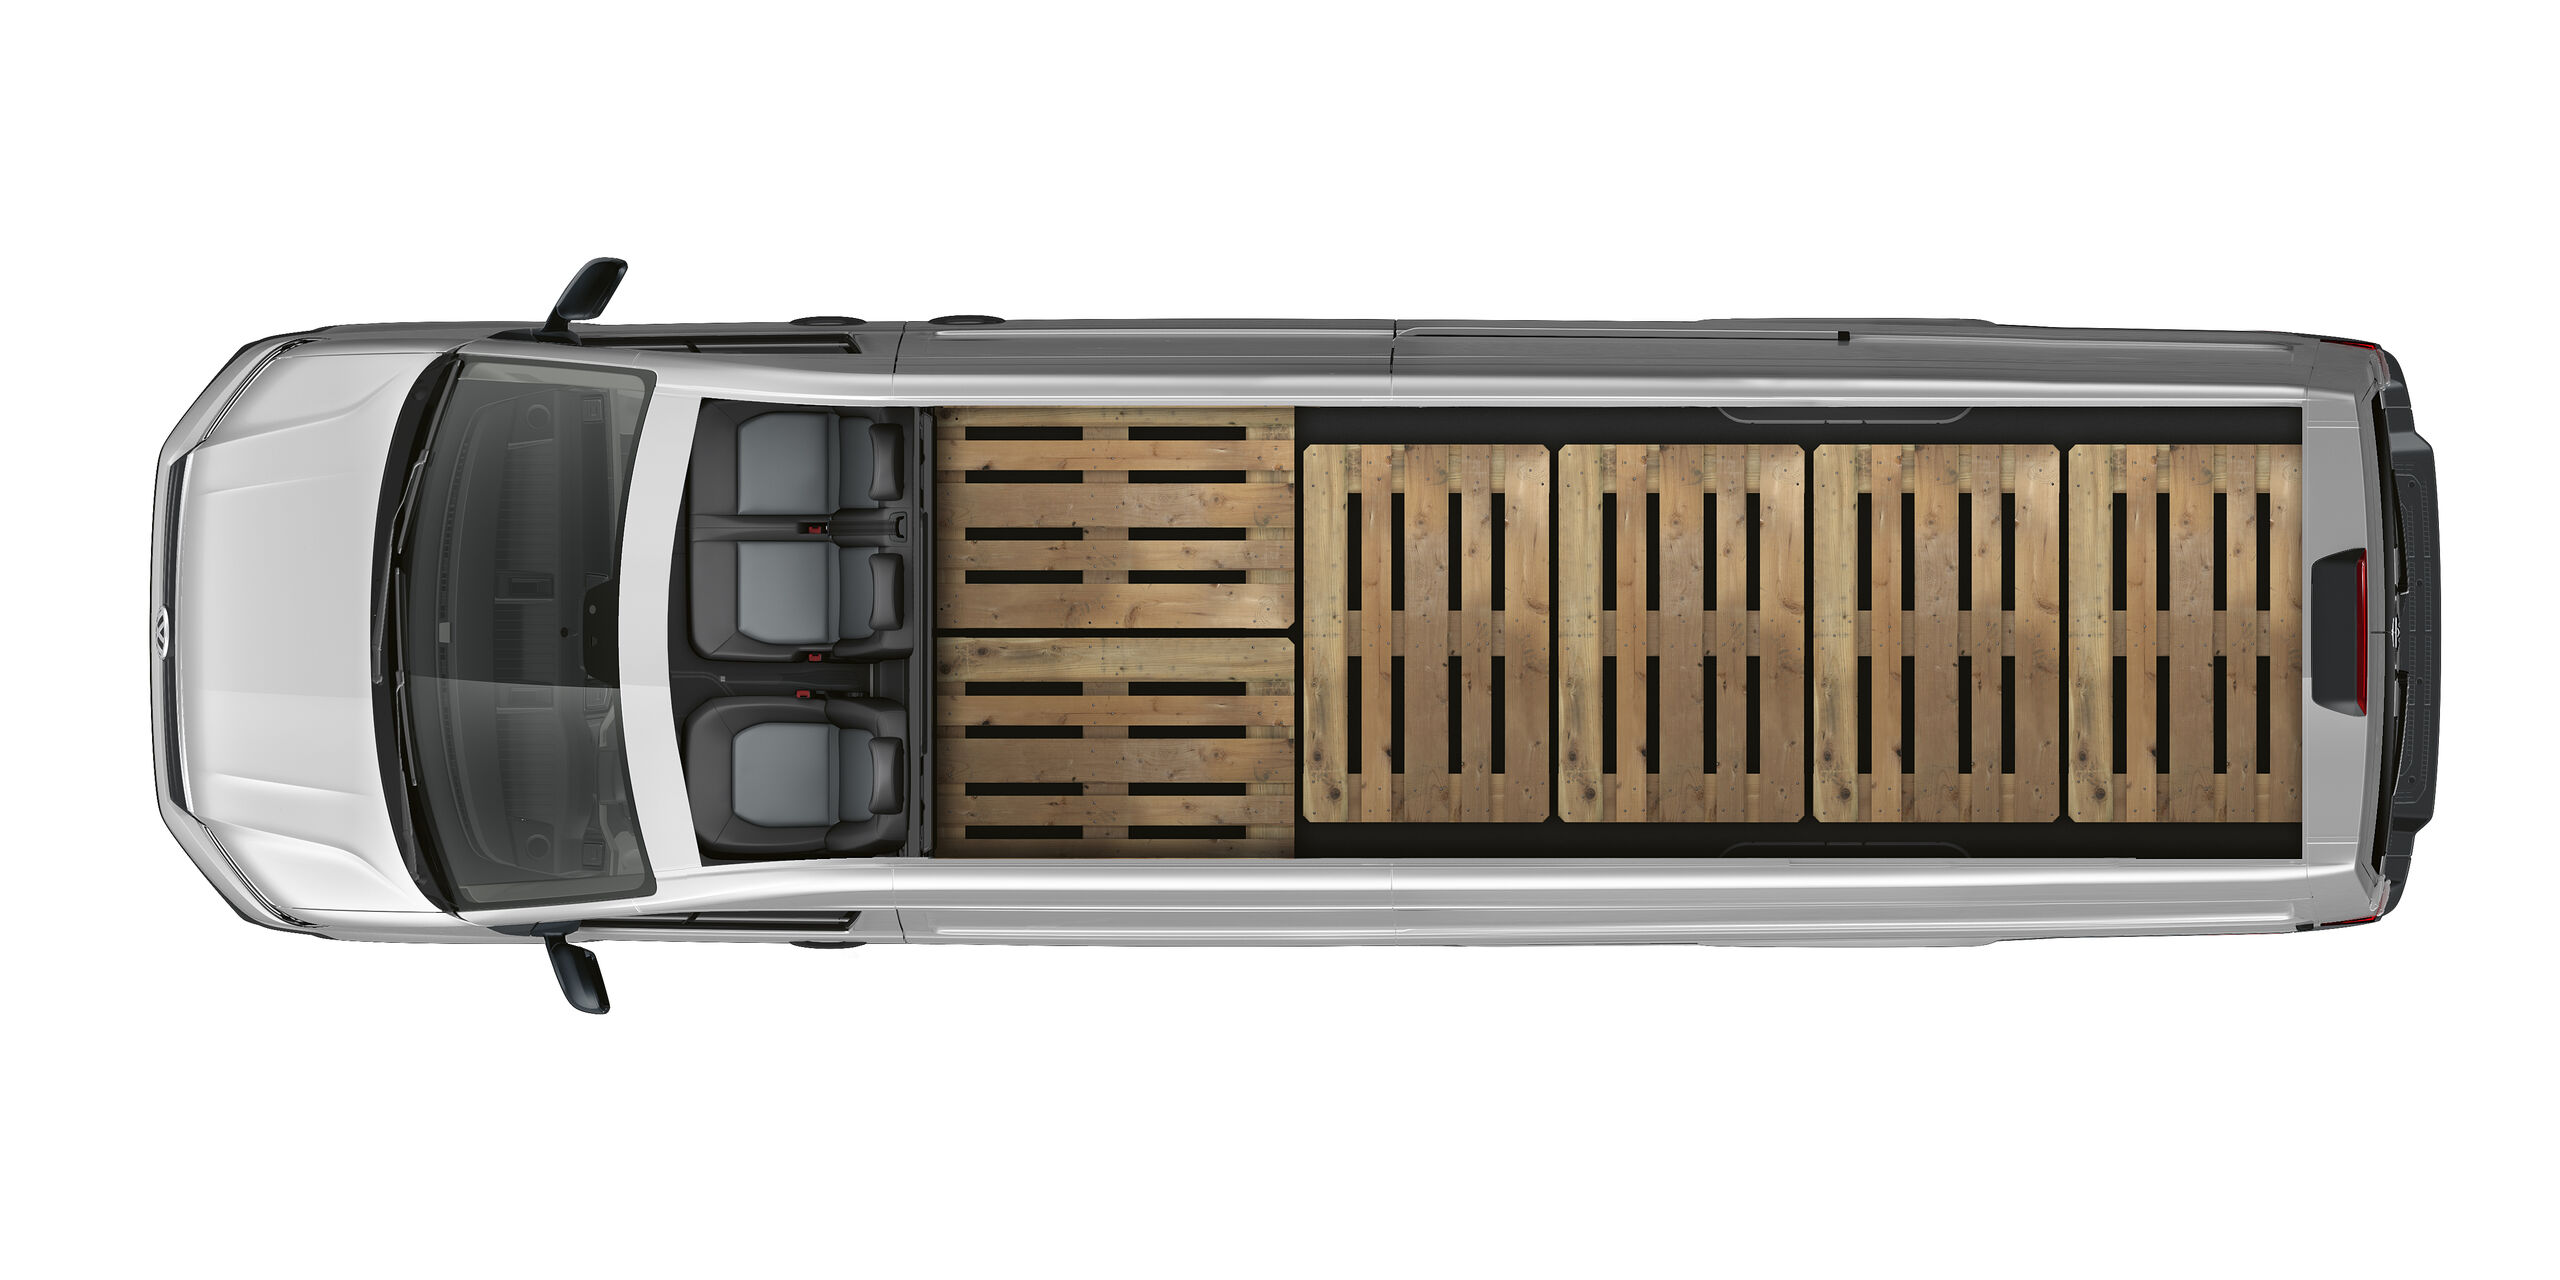 Visão de cima do interior do compartimento de carga do VW Crafter Cargo. Seis europaletes estão dispostas lado a lado.